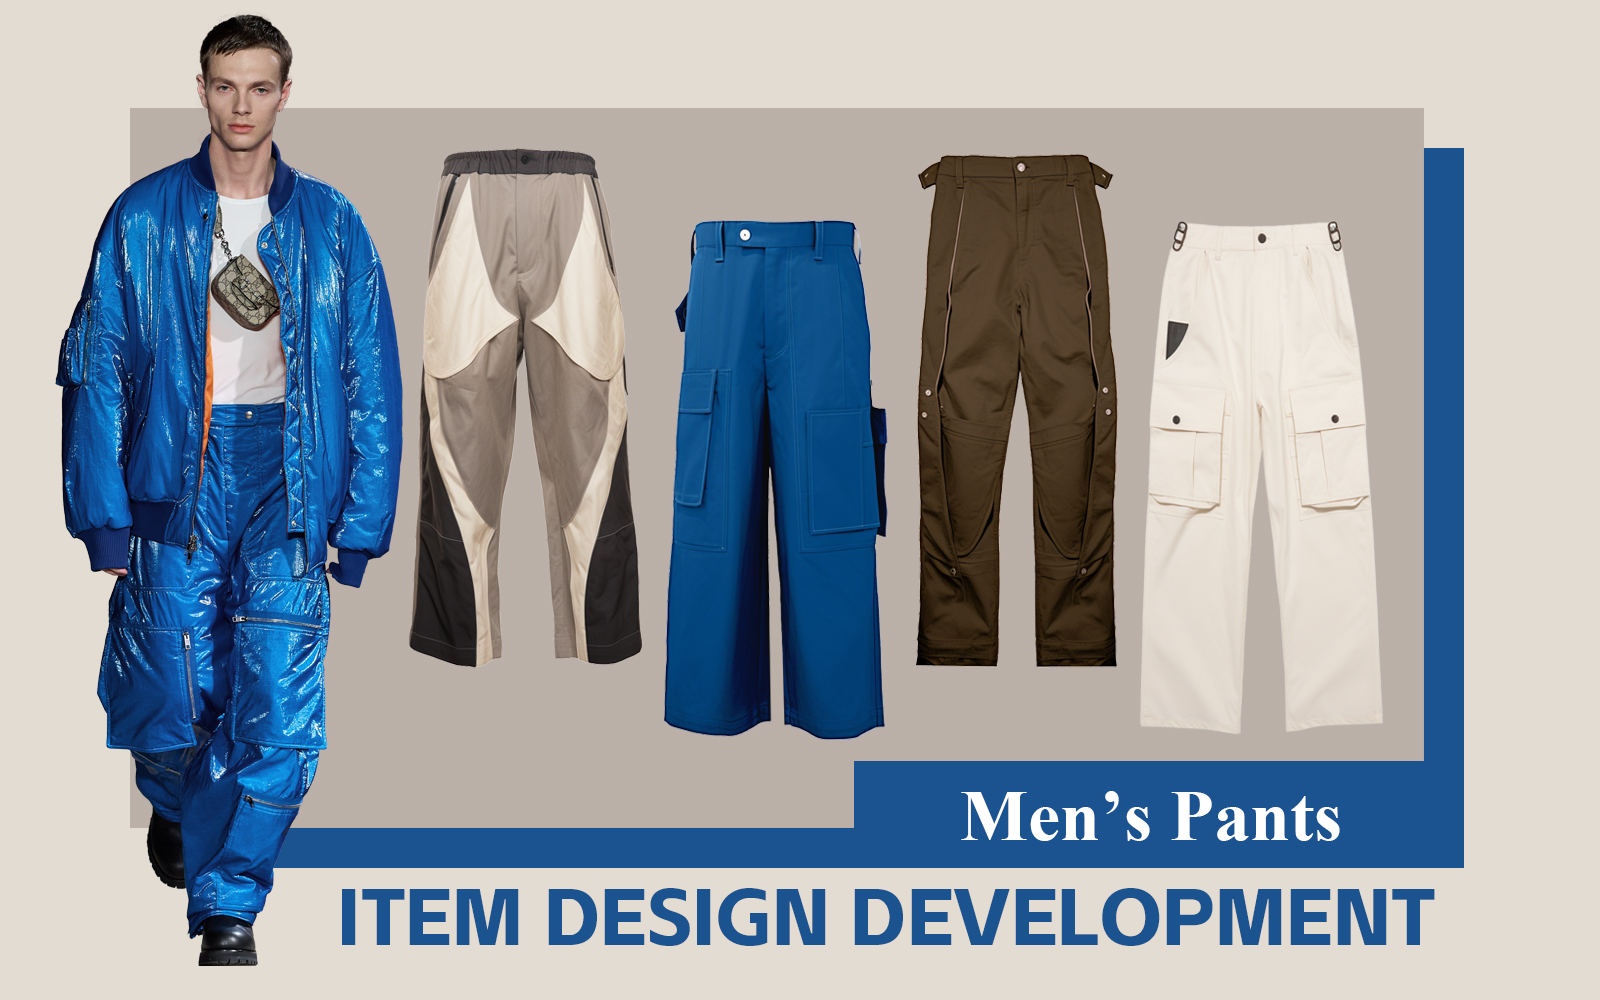 Workwear & Streetwear -- The Design Development of Men's Pants